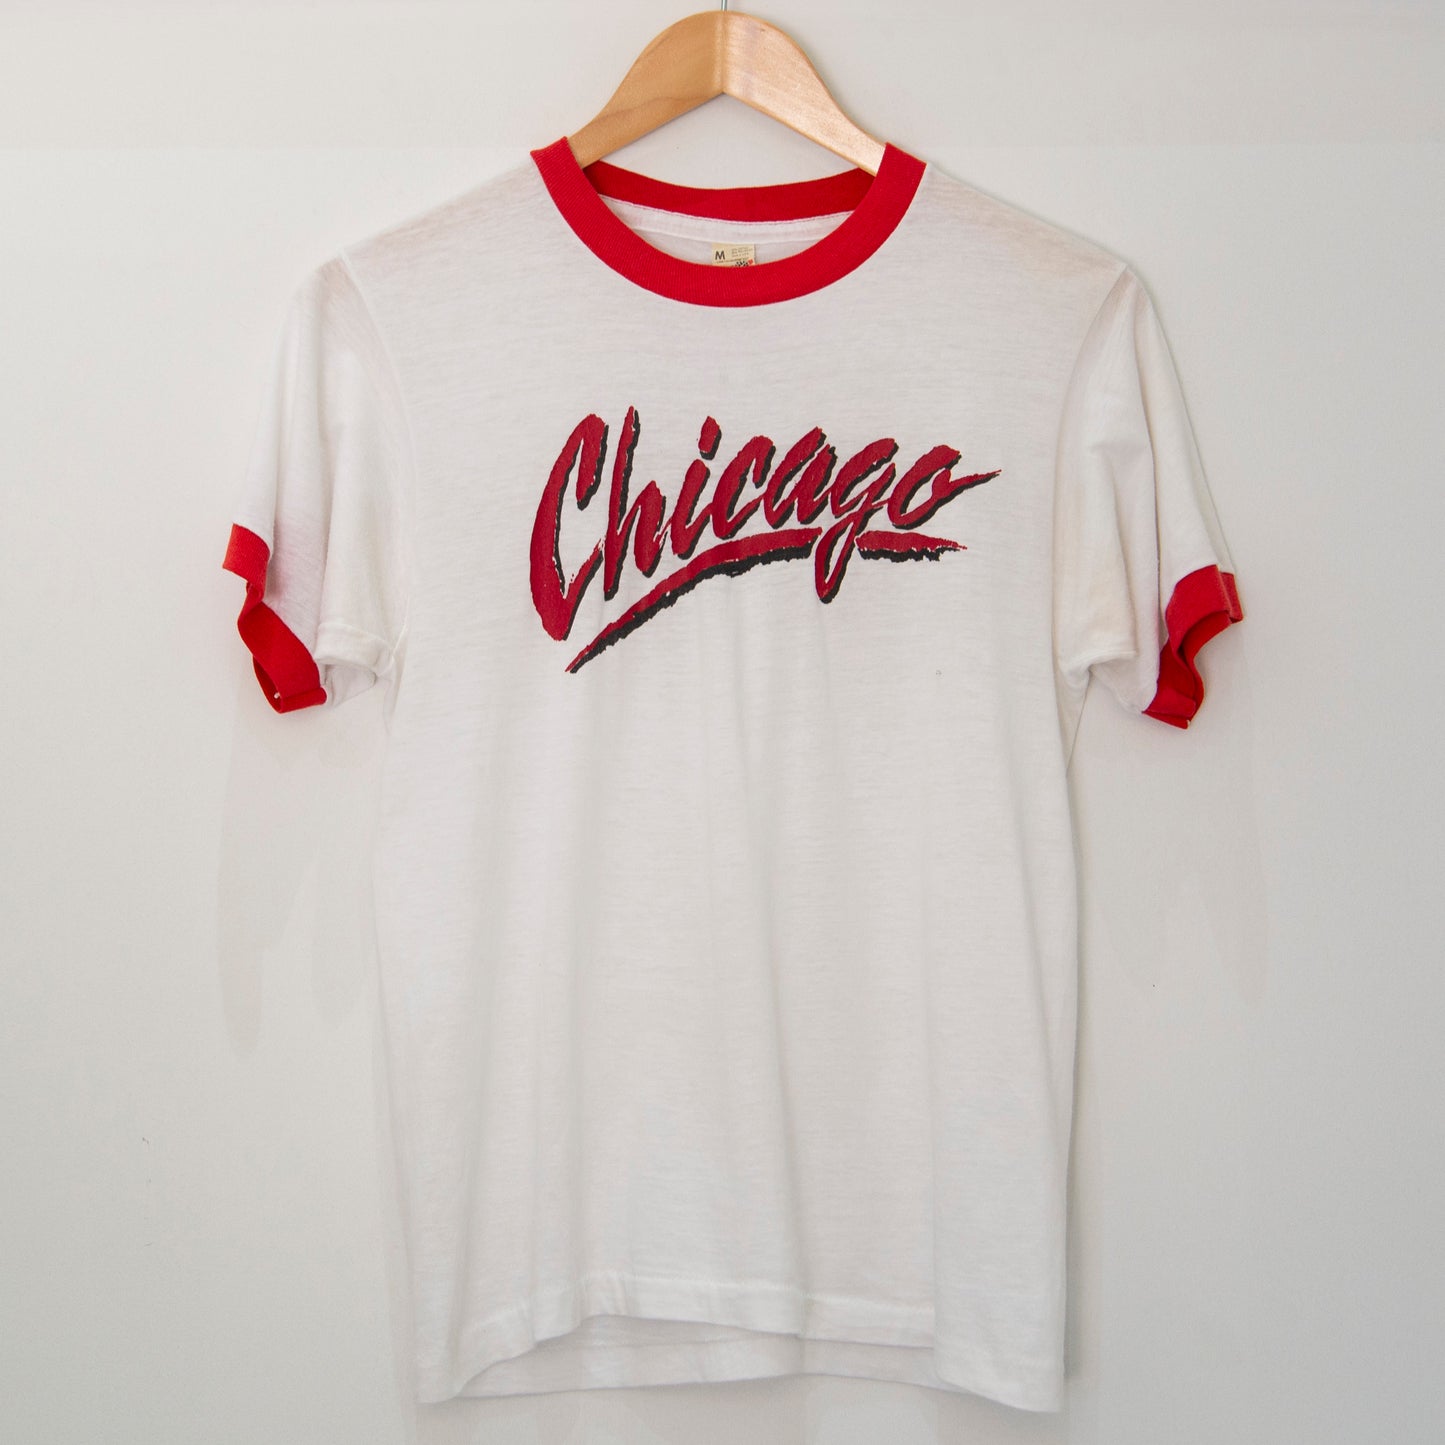 80's Chicago Ringer T-Shirt Small